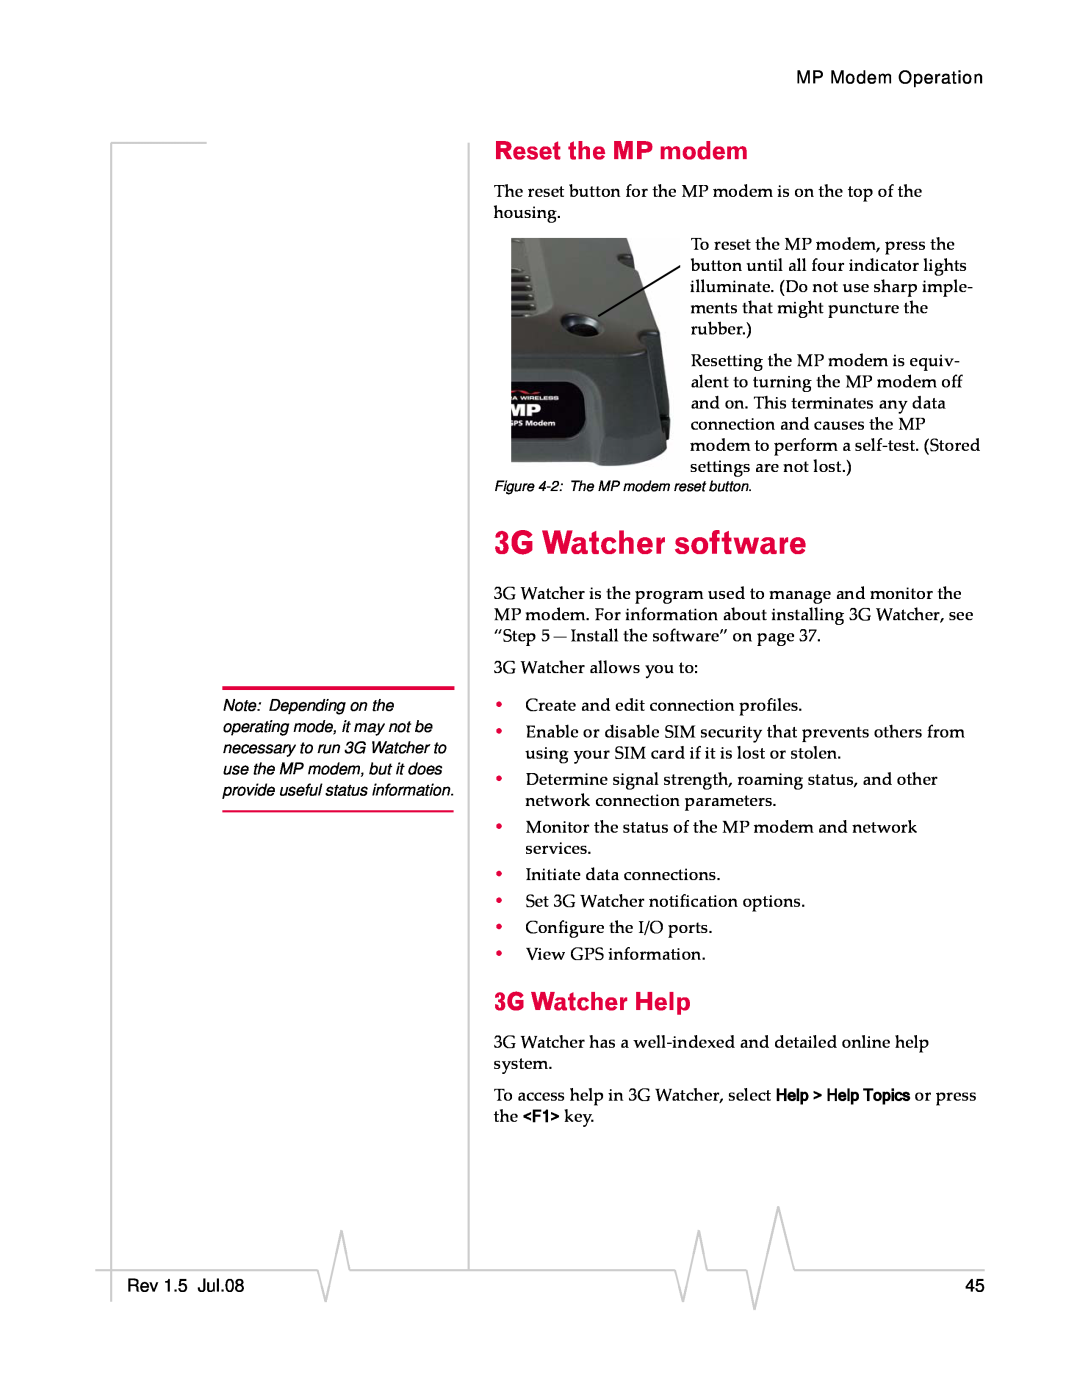 Sierra Wireless MP 880W manual 3G Watcher software, Reset the MP modem, 3G Watcher Help 